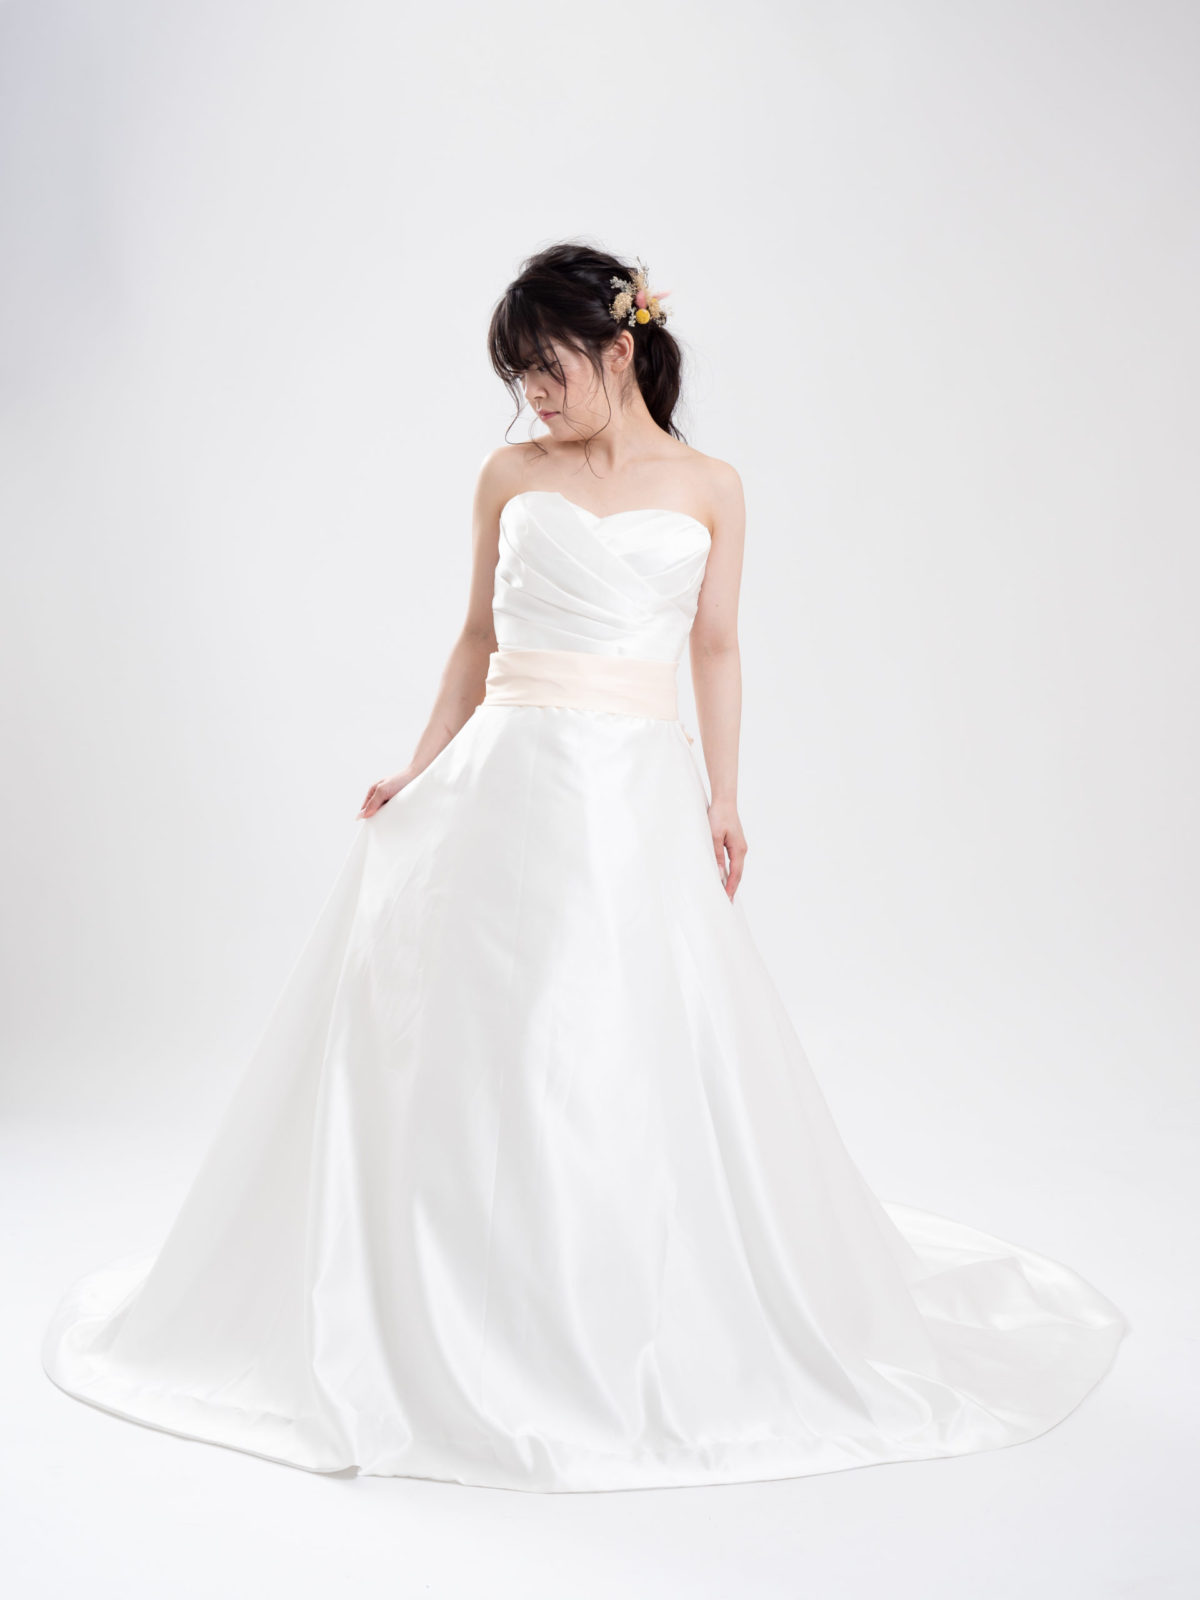 Weddingdress 025 ウェディングドレス カラードレスの格安レンタル 福岡 九州で和装の神社結婚式 和婚ならウェディングセレクト 和婚